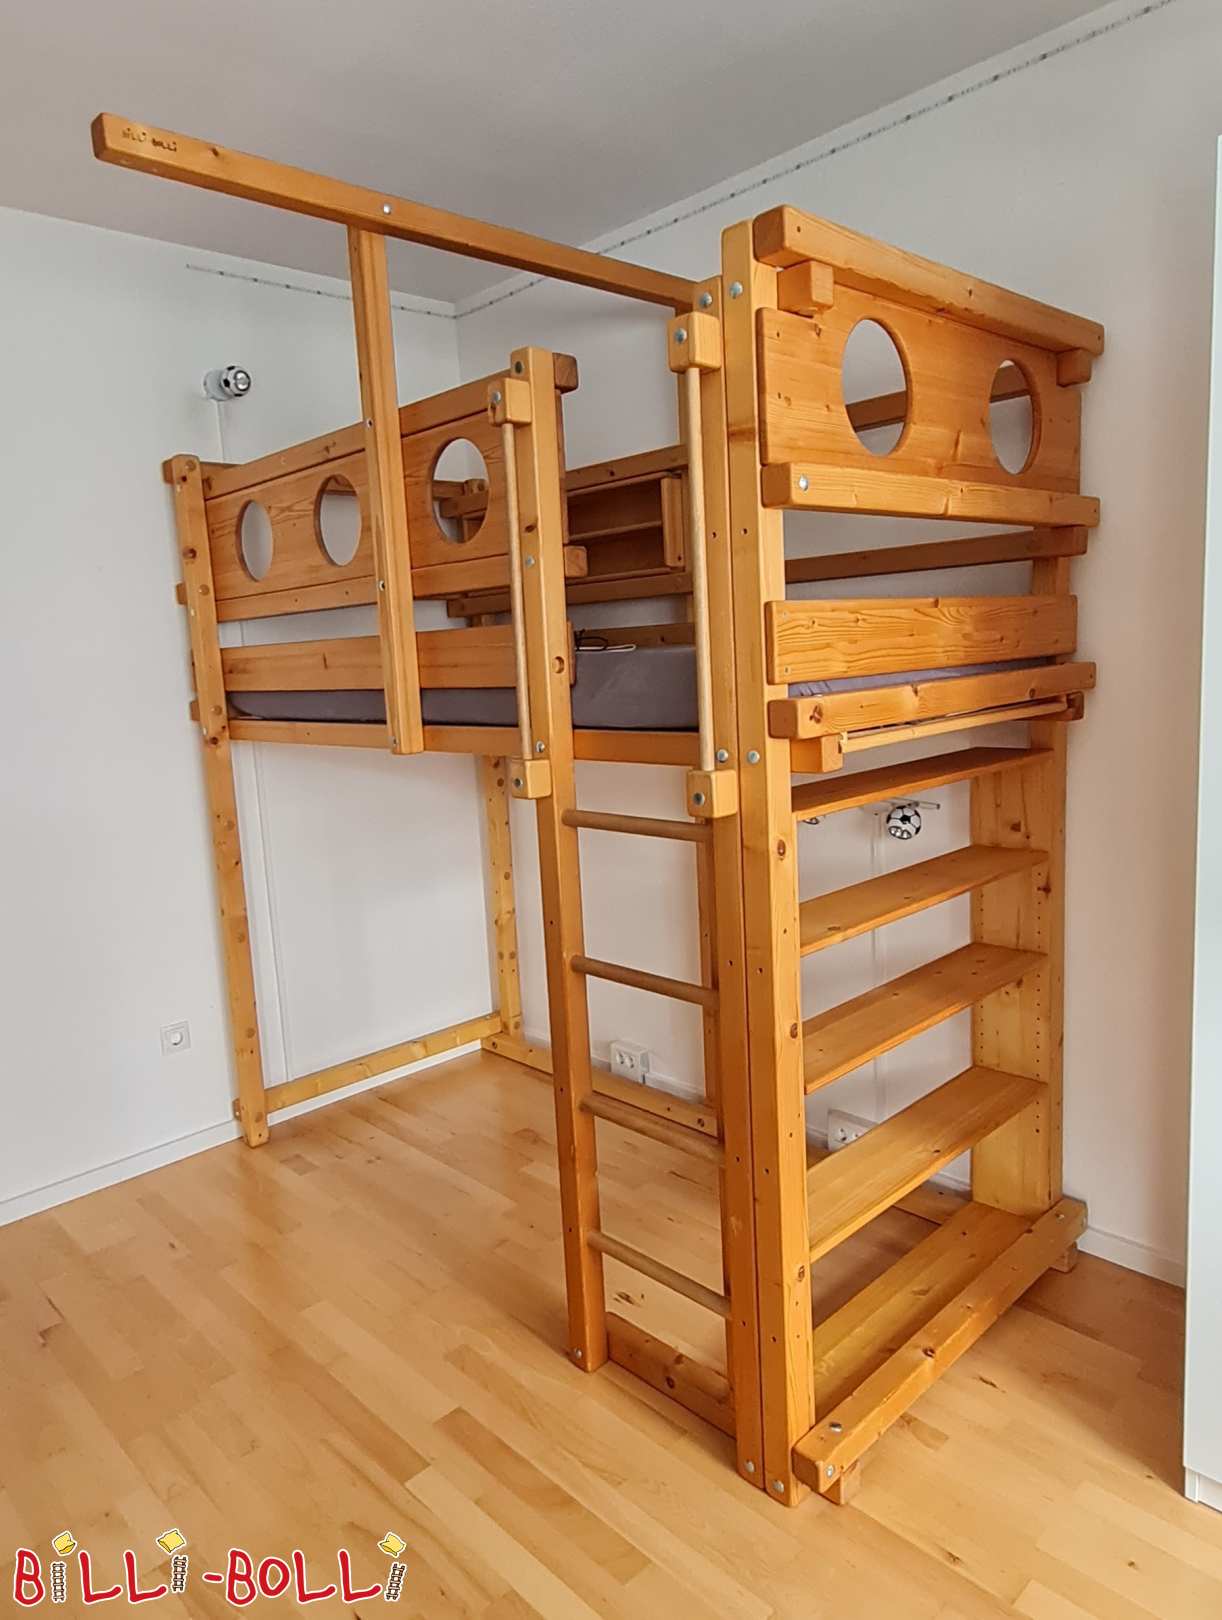 Crescendo loft cama abeto oleado com prateleiras (Categoria: Cama alta crescendo com a criança usada)